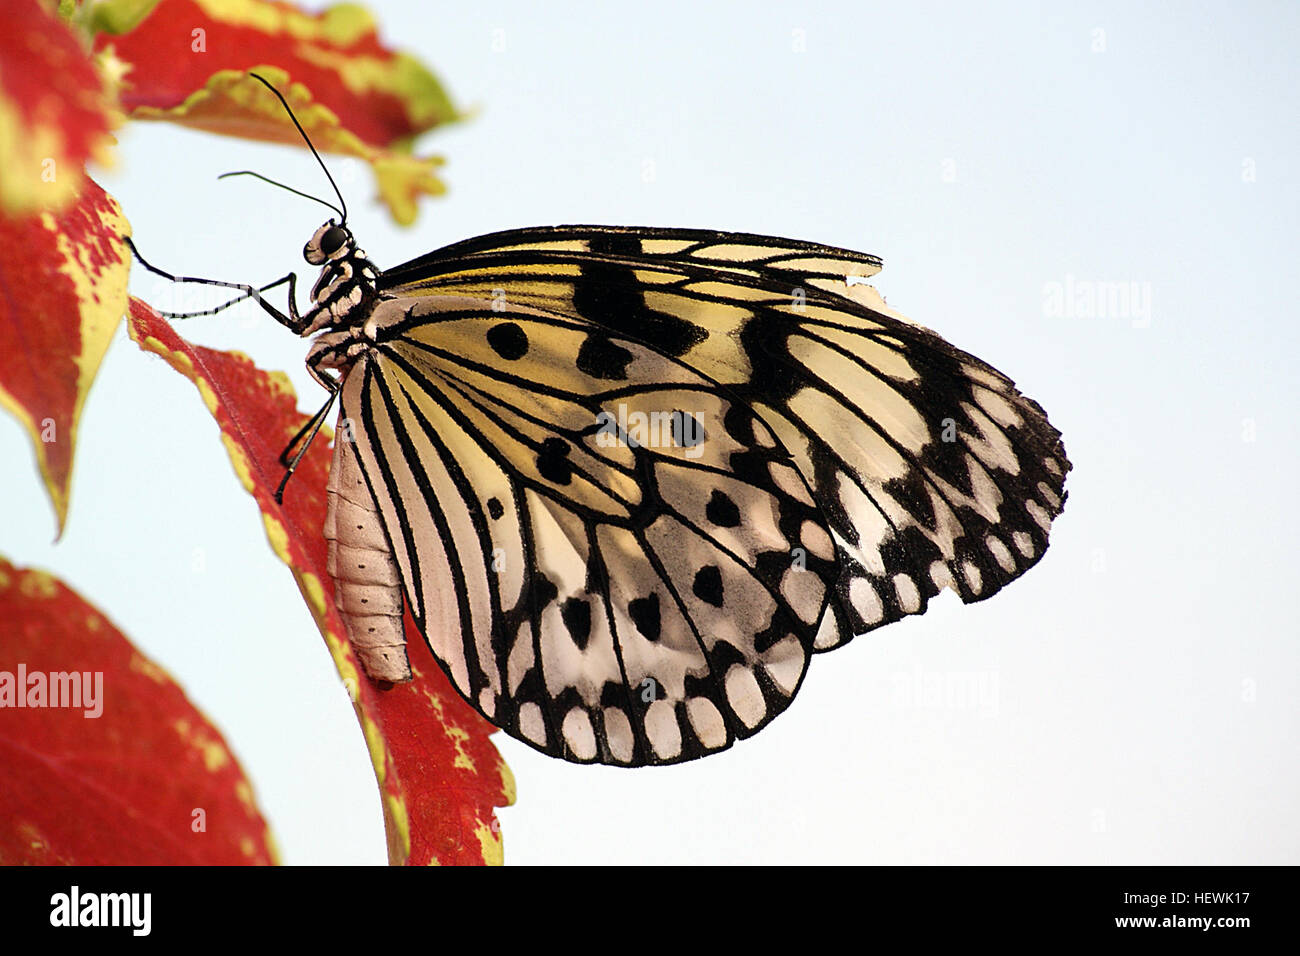 Ein Papier Drachen Schmetterling auf Blumen das schöne Papier Rotmilan oder große Wood Nymph Nektar aus einer Blume genießen. Das schöne Papier Kite oder große Wood Nymph Nektar aus einer Blume genießen. Quelle: Oceansunsunsets Foto-Bibliothek das schöne Papier Kite Butterfly Papier Drachen Schmetterling hat nur zwei ziemlich häufige Farben, schwarz und weiß, aber ist immer noch ein Blickfang Schönheit. Der Weg das Licht durch die Flügel scheint ist einfach unglaublich, und gibt es andere Farben um ihn herum sieht ein bisschen wie Glasmalerei. Diese Schönheiten kommen aus Malaysia und den Philippinen und Südostasien im Allgemeinen. Stockfoto